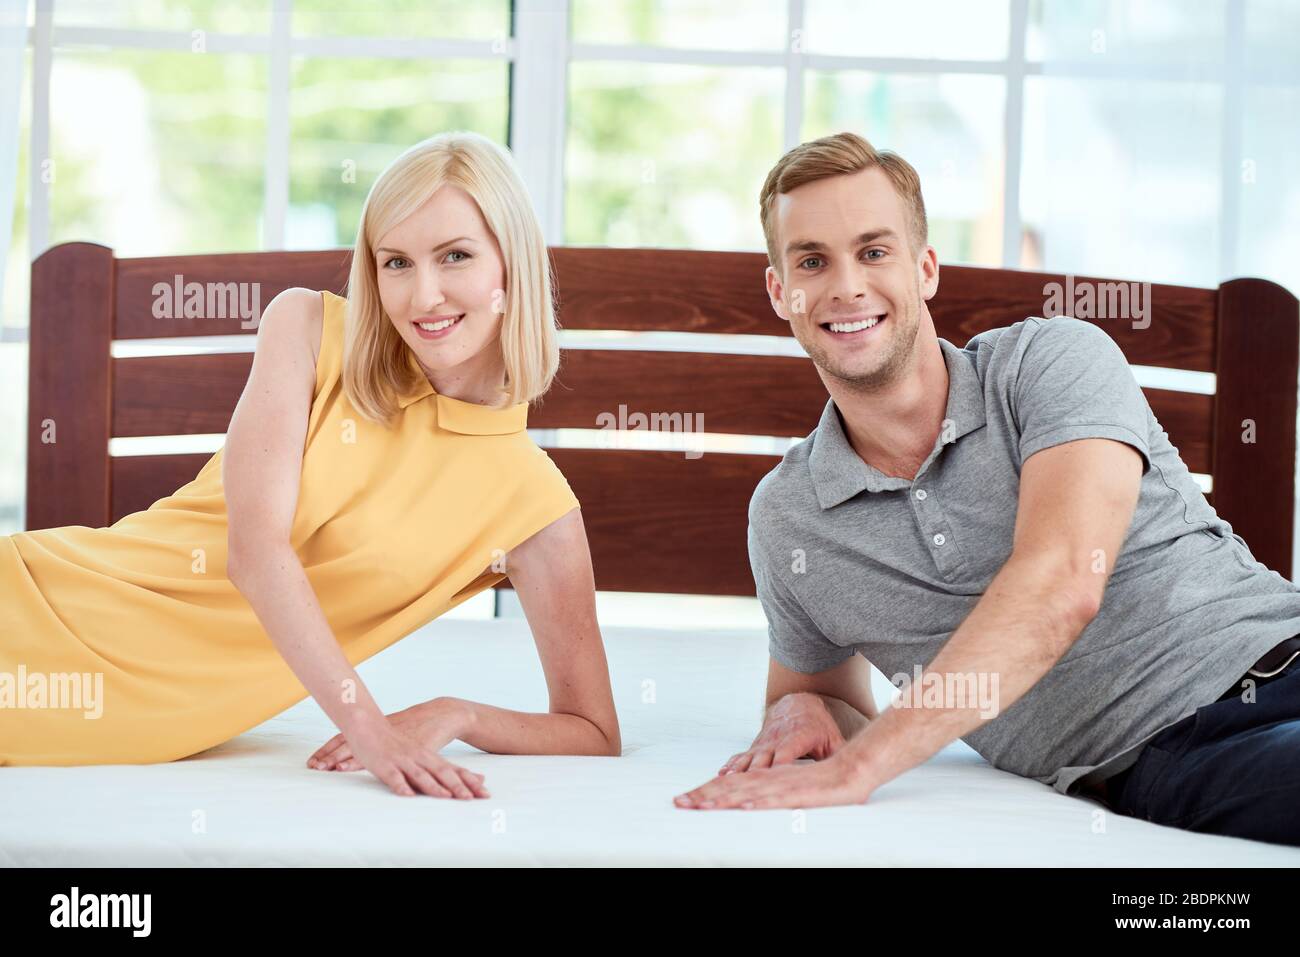 Porträt des schönen und glücklichen jungen Paar testen eine neue ergonomische Matratze für ihr Bett und lächeln vor der Kamera. Gesundheitswesen. Familienkonzept. Hoffnung. Schlafzimmer Stockfoto